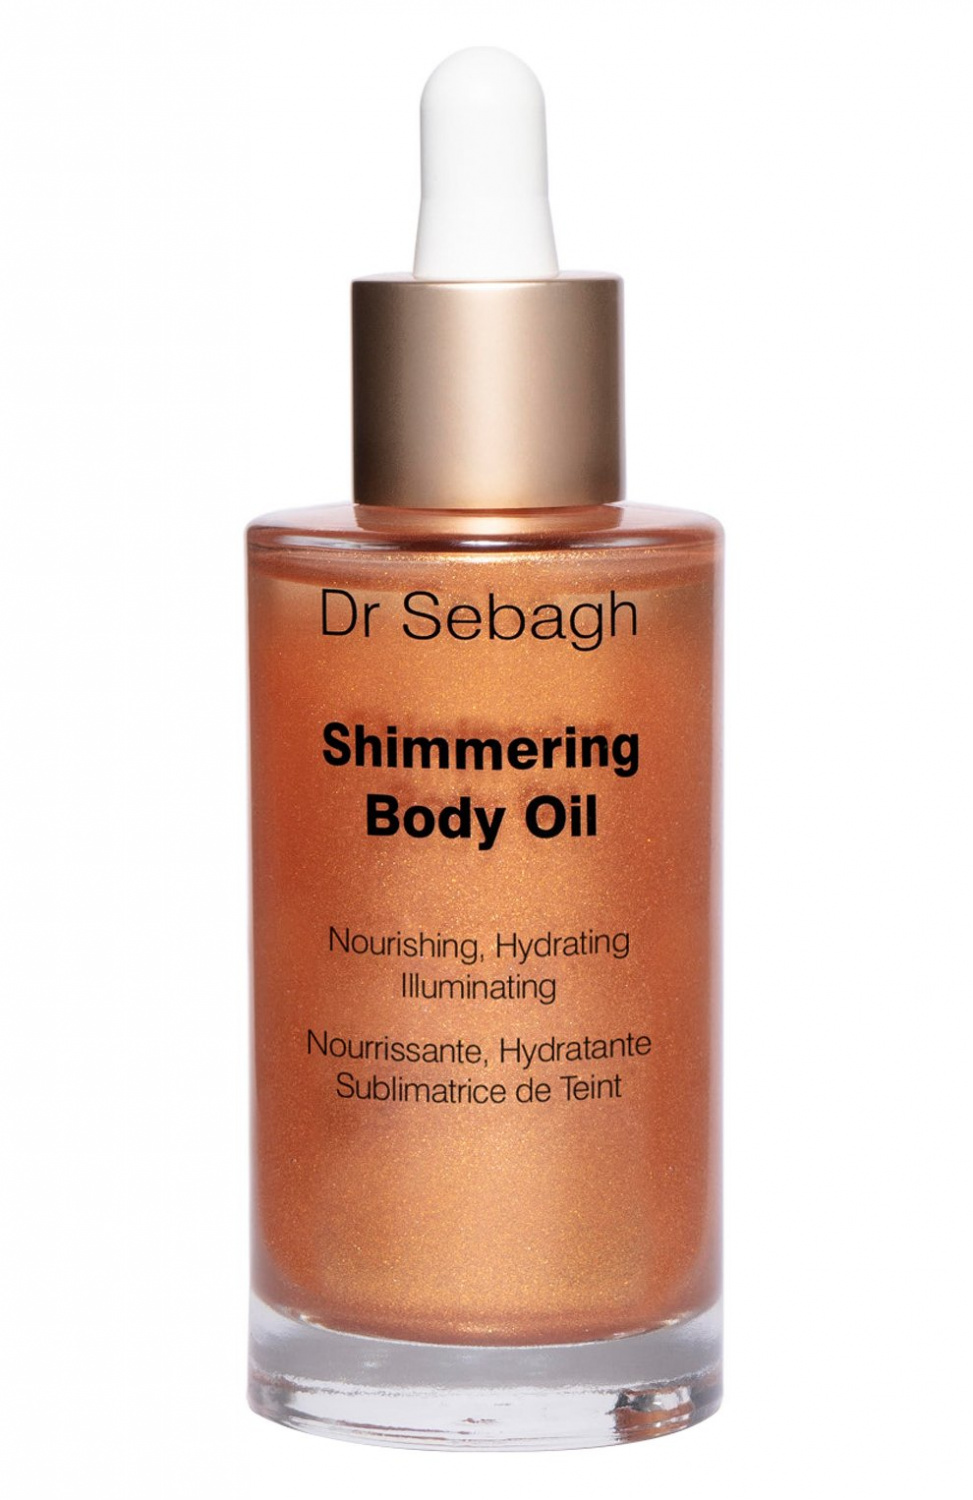 Dr Sebagh Shimmering Body Oil 50ml - интернет-магазин профессиональной косметики Spadream, изображение 38980